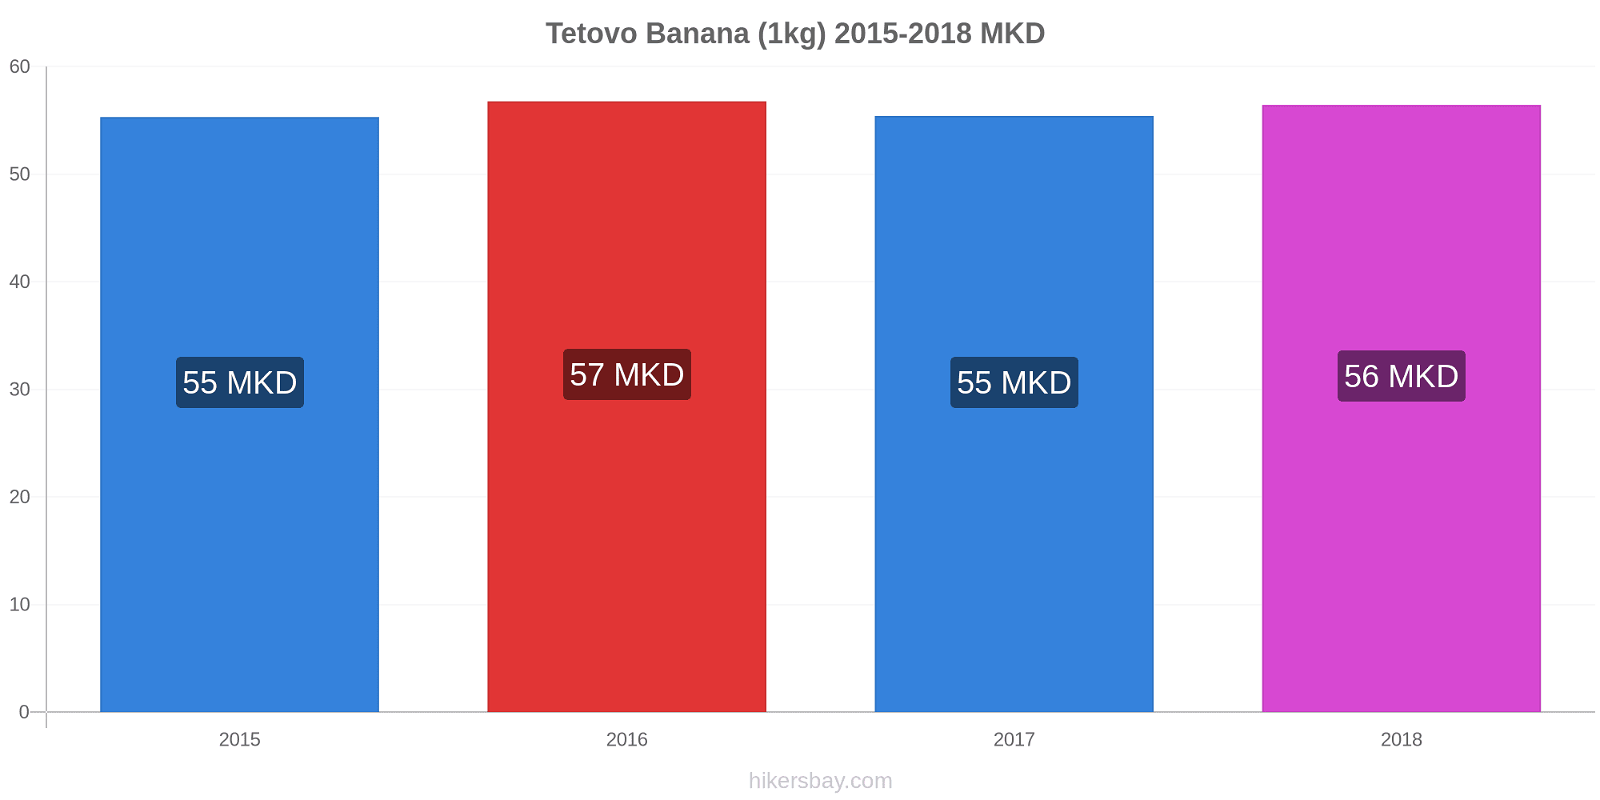 Tetovo modificări de preț Banana (1kg) hikersbay.com